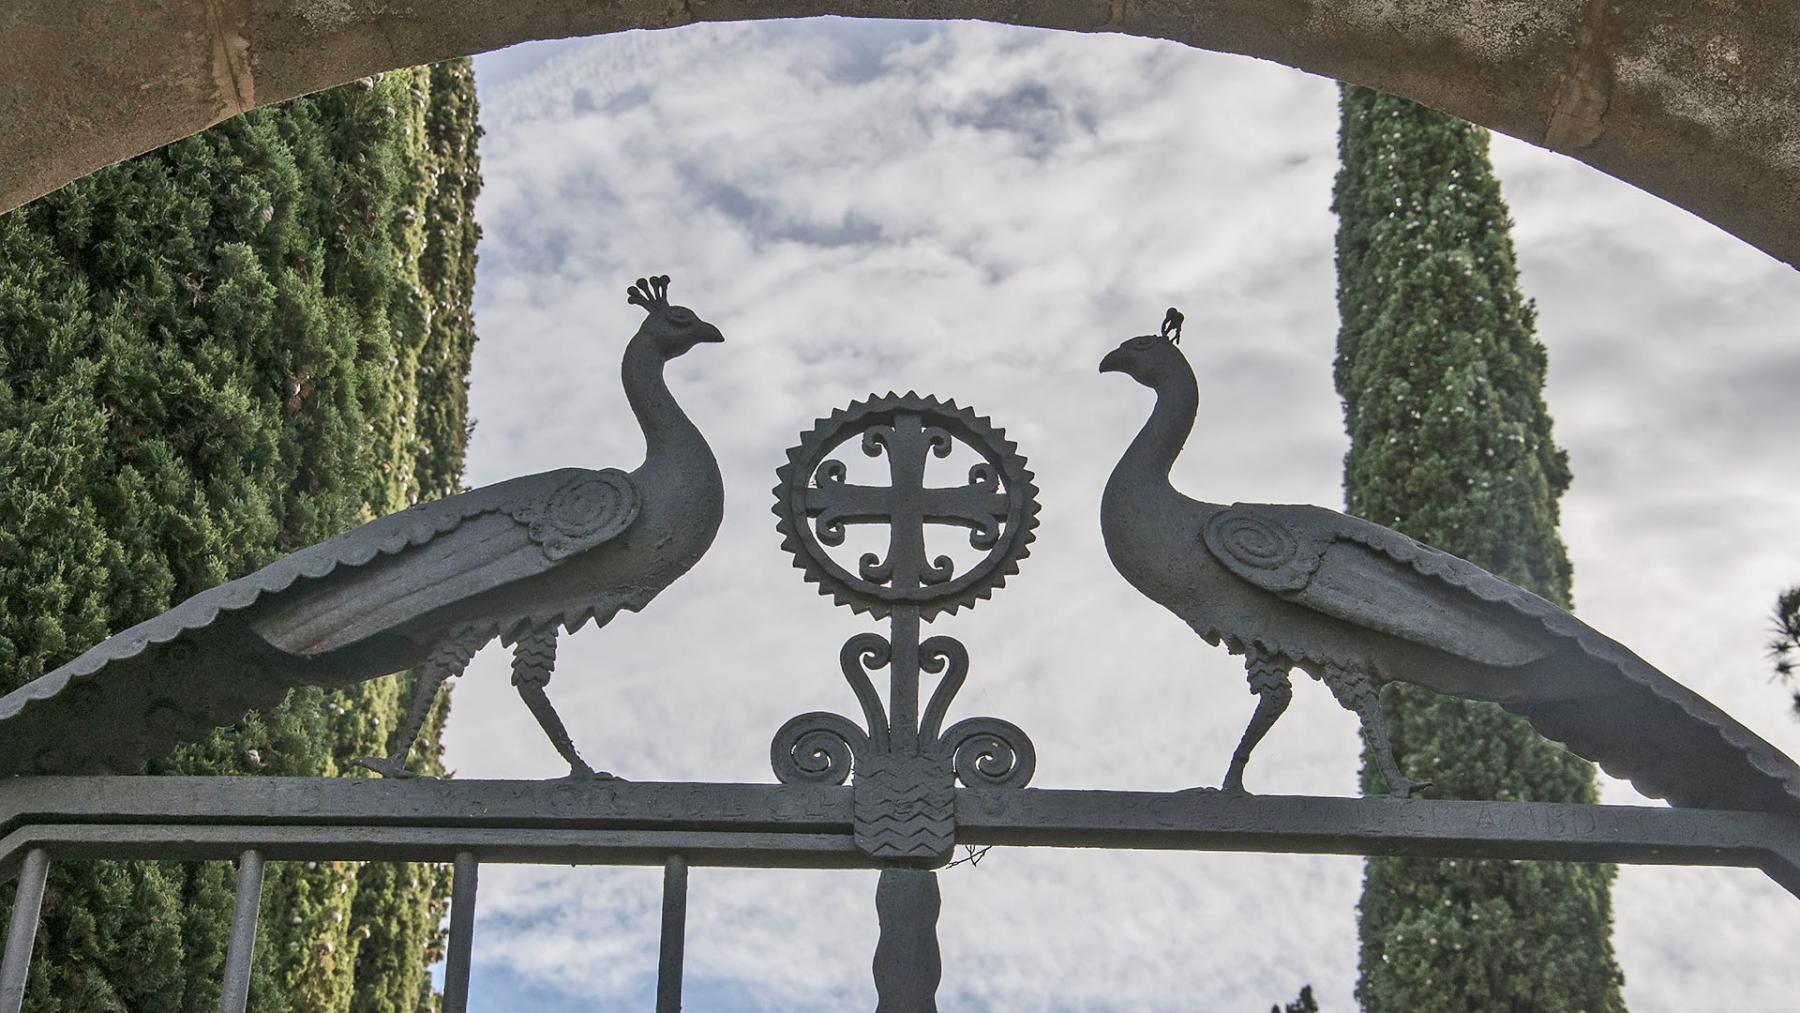 Llinda de la porta d'accés al cementiri amb un treball en forja que representen dos paons blaus, símbol cristià de la vida eterna